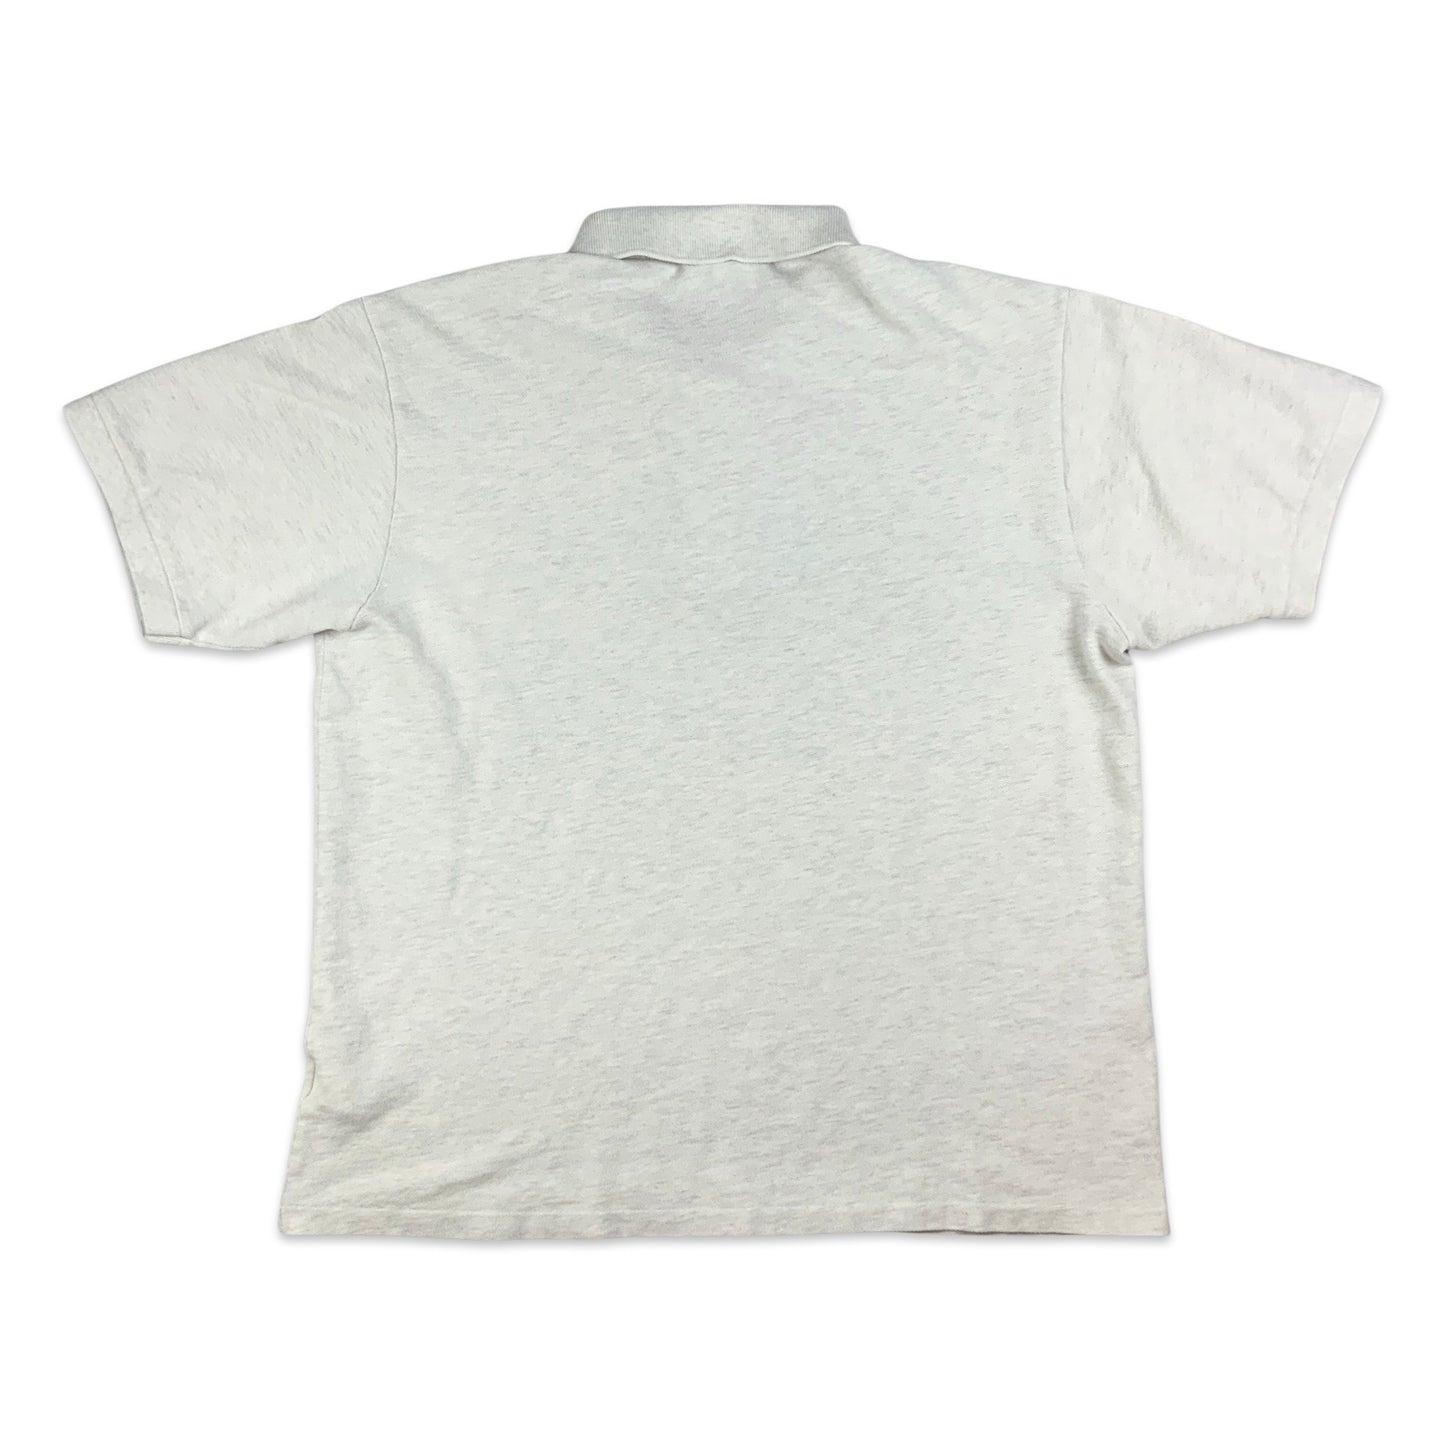 Lacoste Marl White Polo Shirt M L